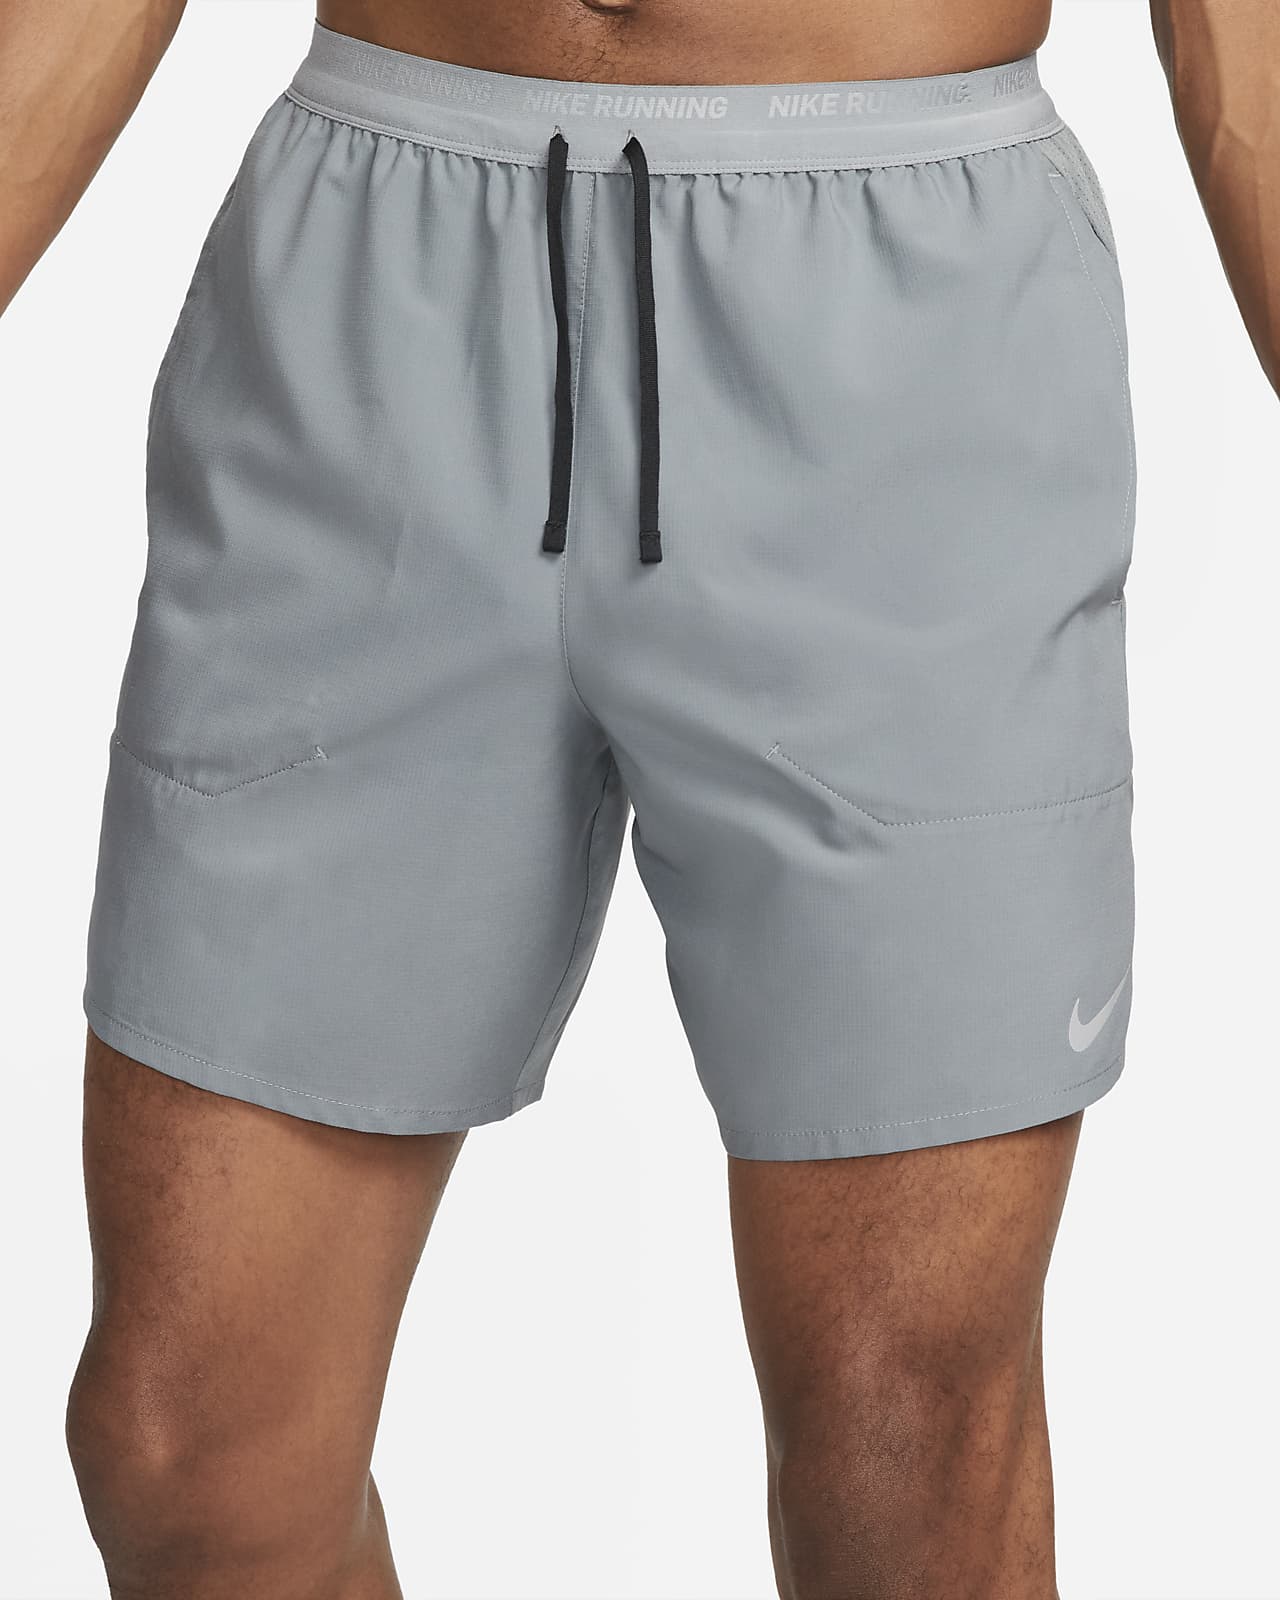 Korn lommeregner Tilfældig Nike Stride Men's Dri-FIT 7" Unlined Running Shorts. Nike.com